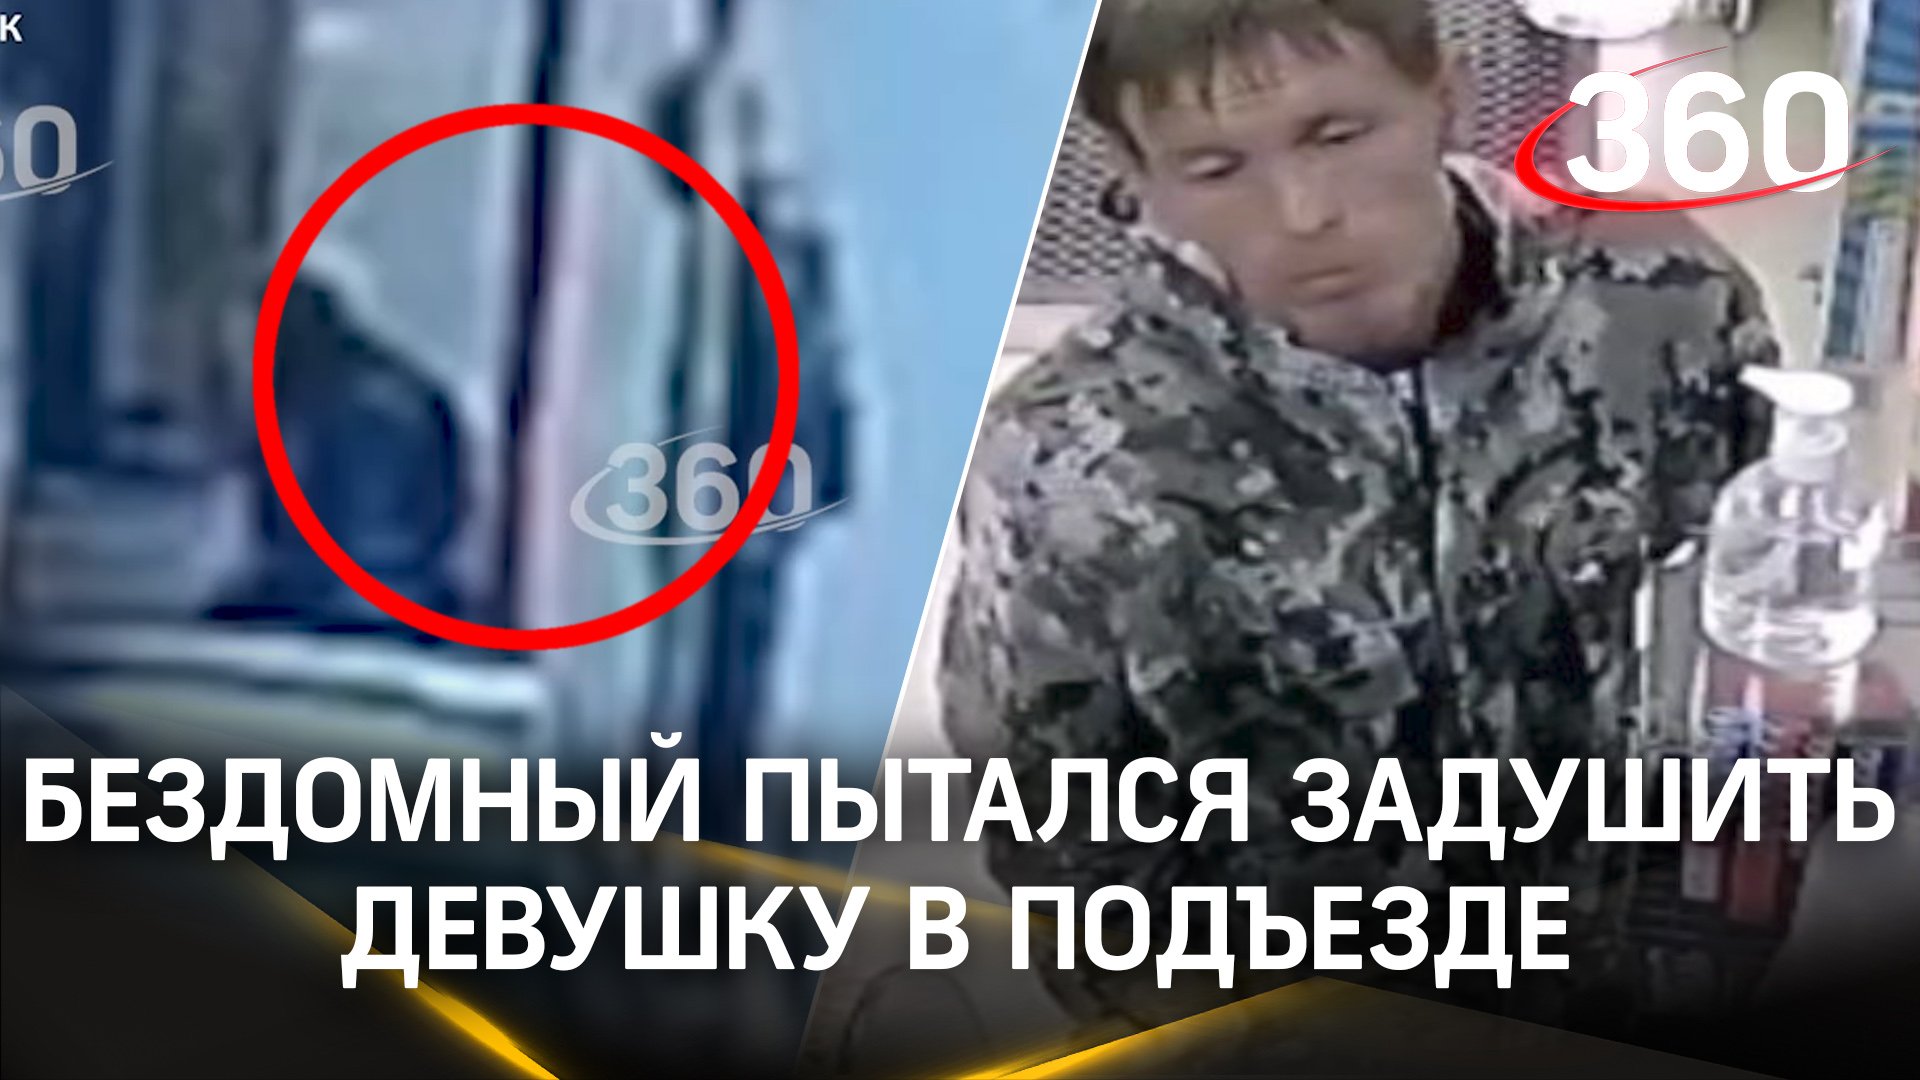 Пьяный бездомный пытался задушить девушку в подъезде Владивостока